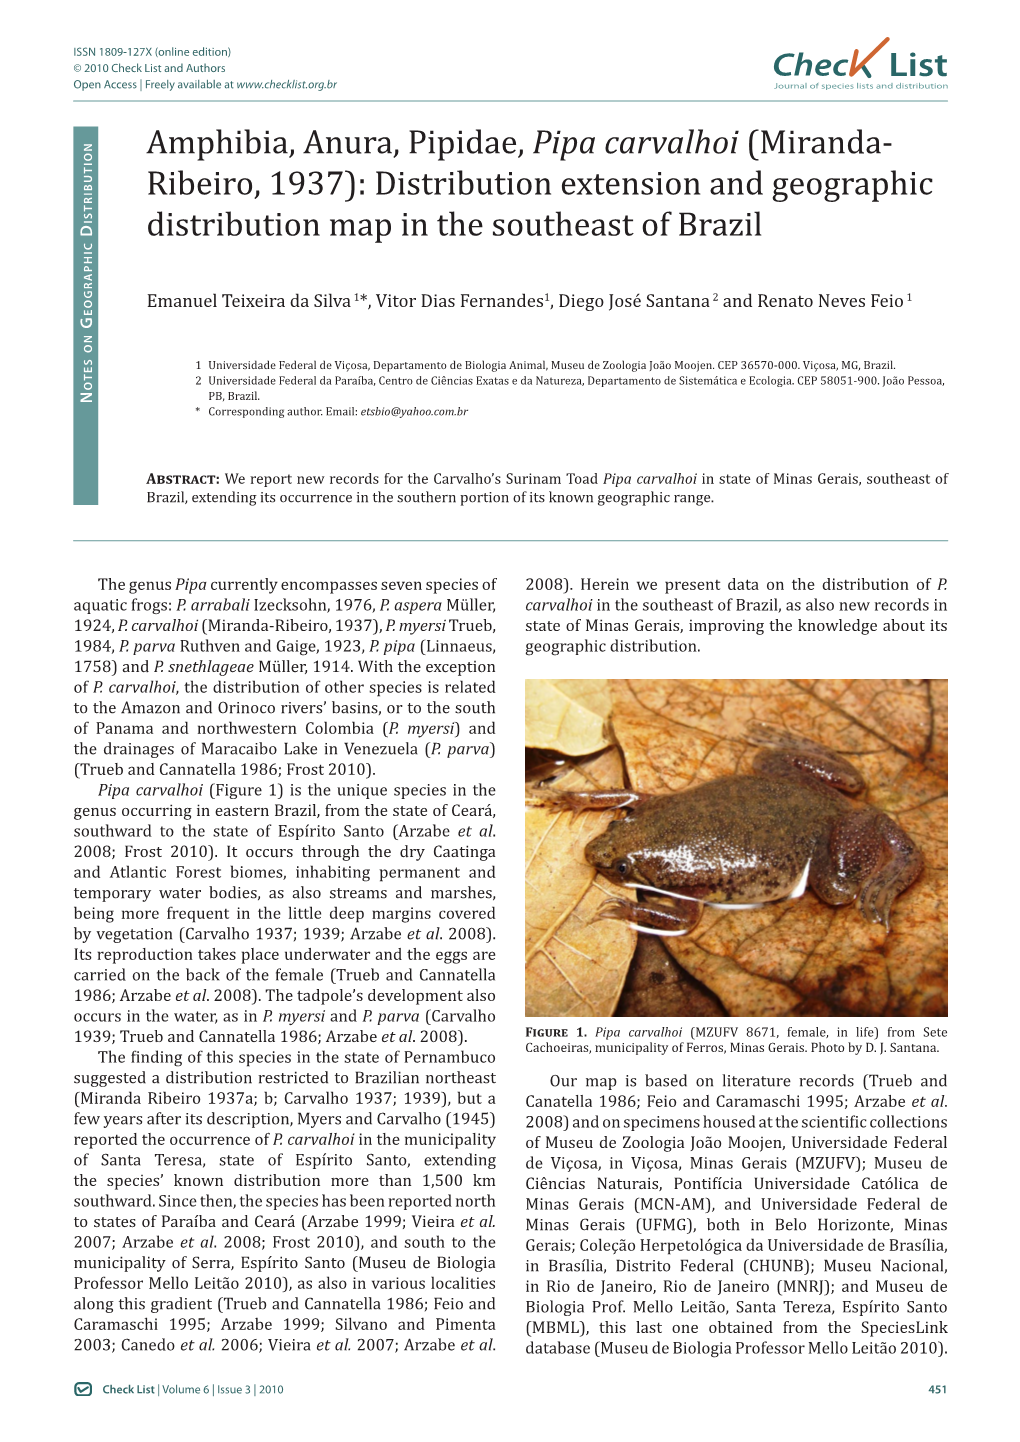 Amphibia, Anura, Pipidae, Pipa Carvalhoi (Miranda- Ribeiro, 1937): Distribution Extension and Geographic ISTRIBUTIO